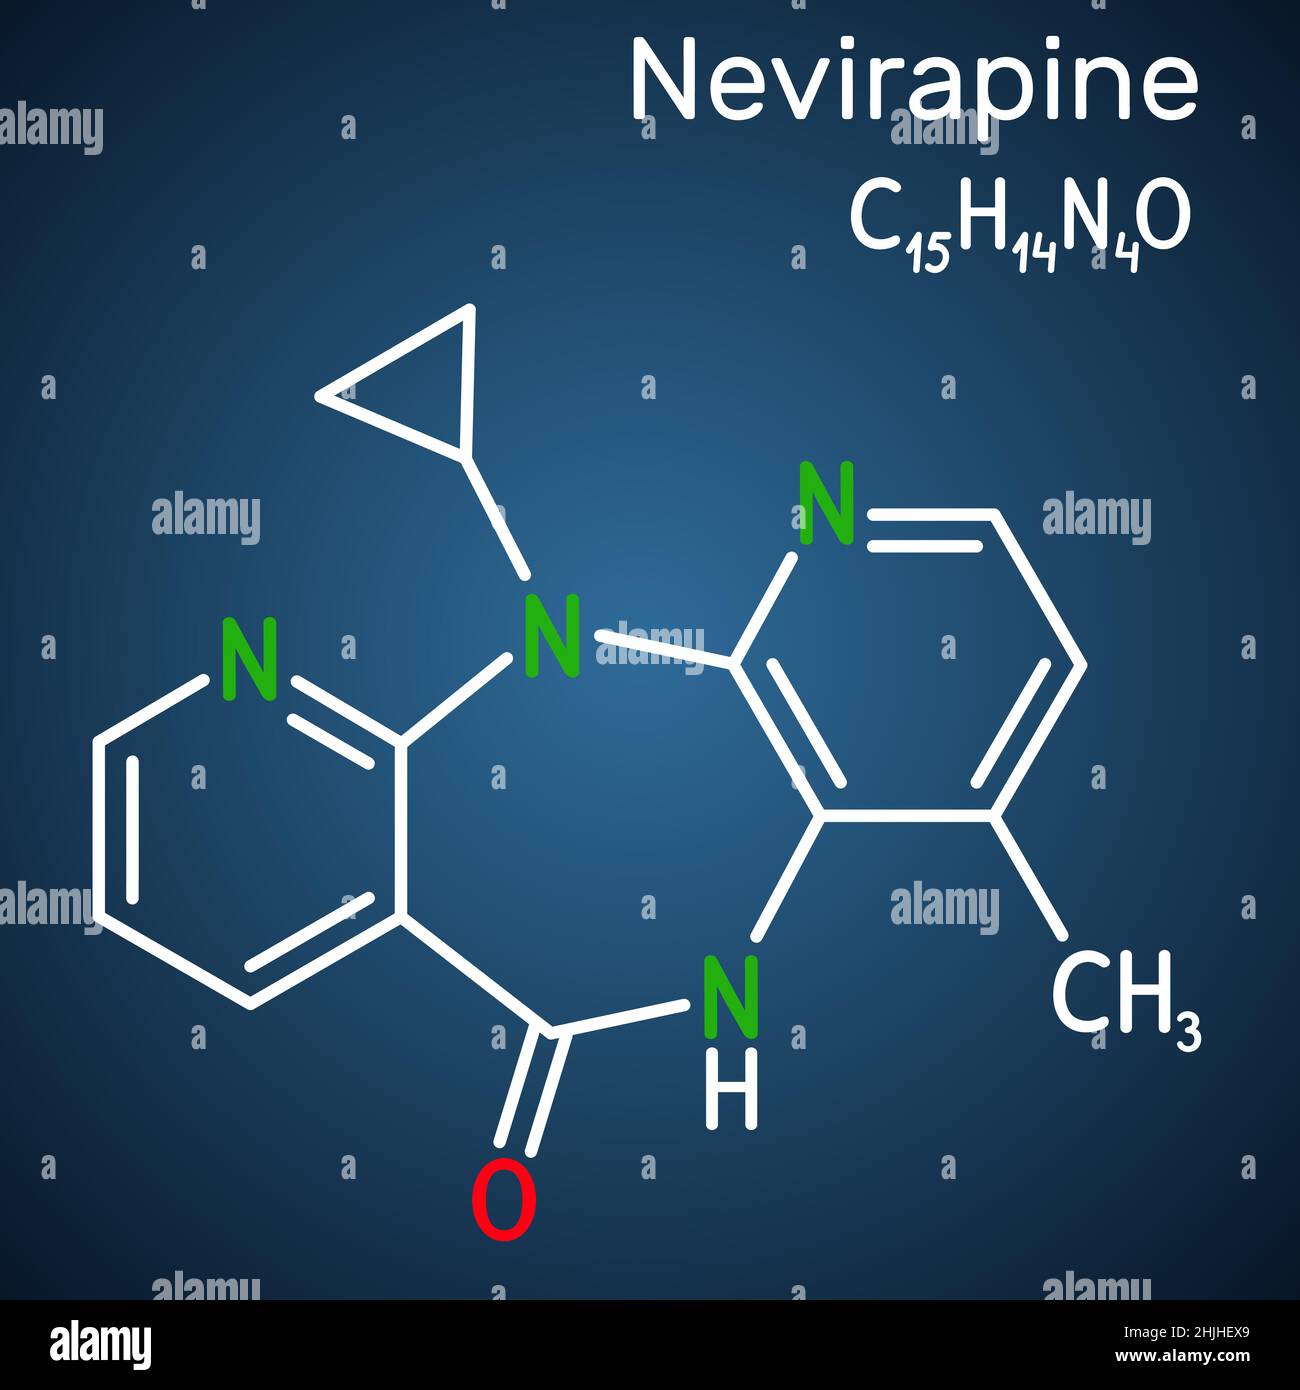 Nevirapineе-Molekül. Es wird zur Behandlung von Infektionen mit dem humanen Immunschwächevirus (HIV) und dem erworbenen Immunschwächesyndrom (AIDS) verwendet. Bauliche Chem Stock Vektor